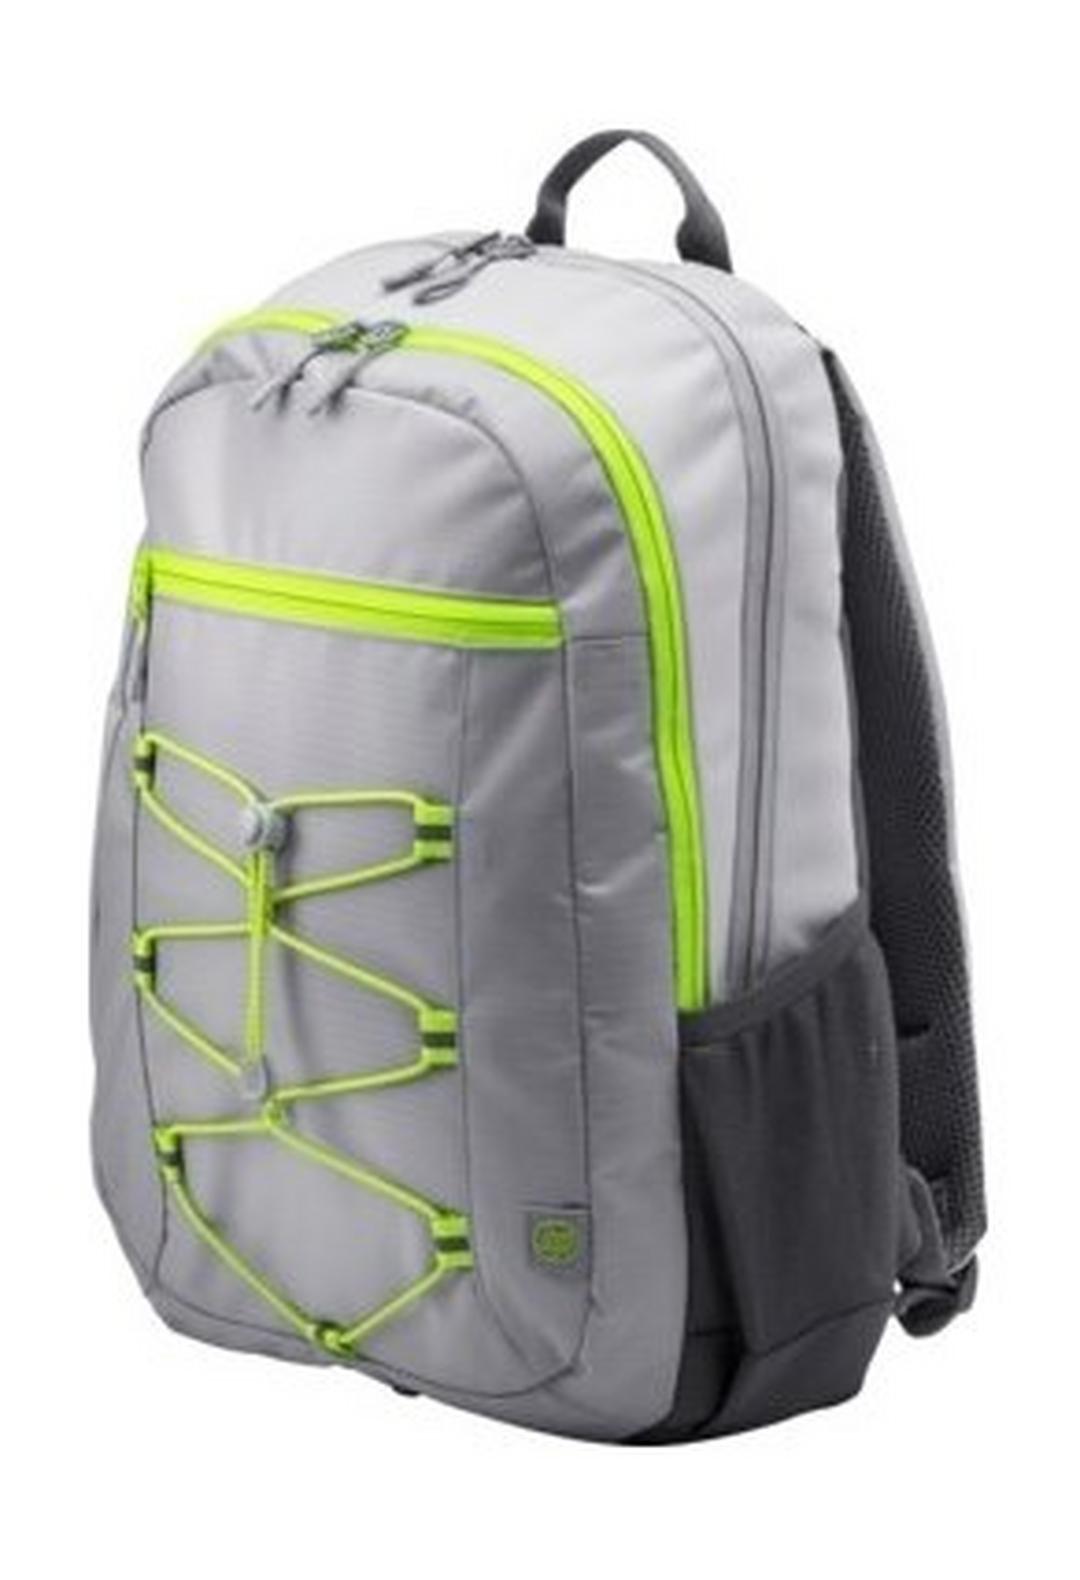 HP 15.6 Active Backpack (1LU23AA) - Grey/Neon Yellow